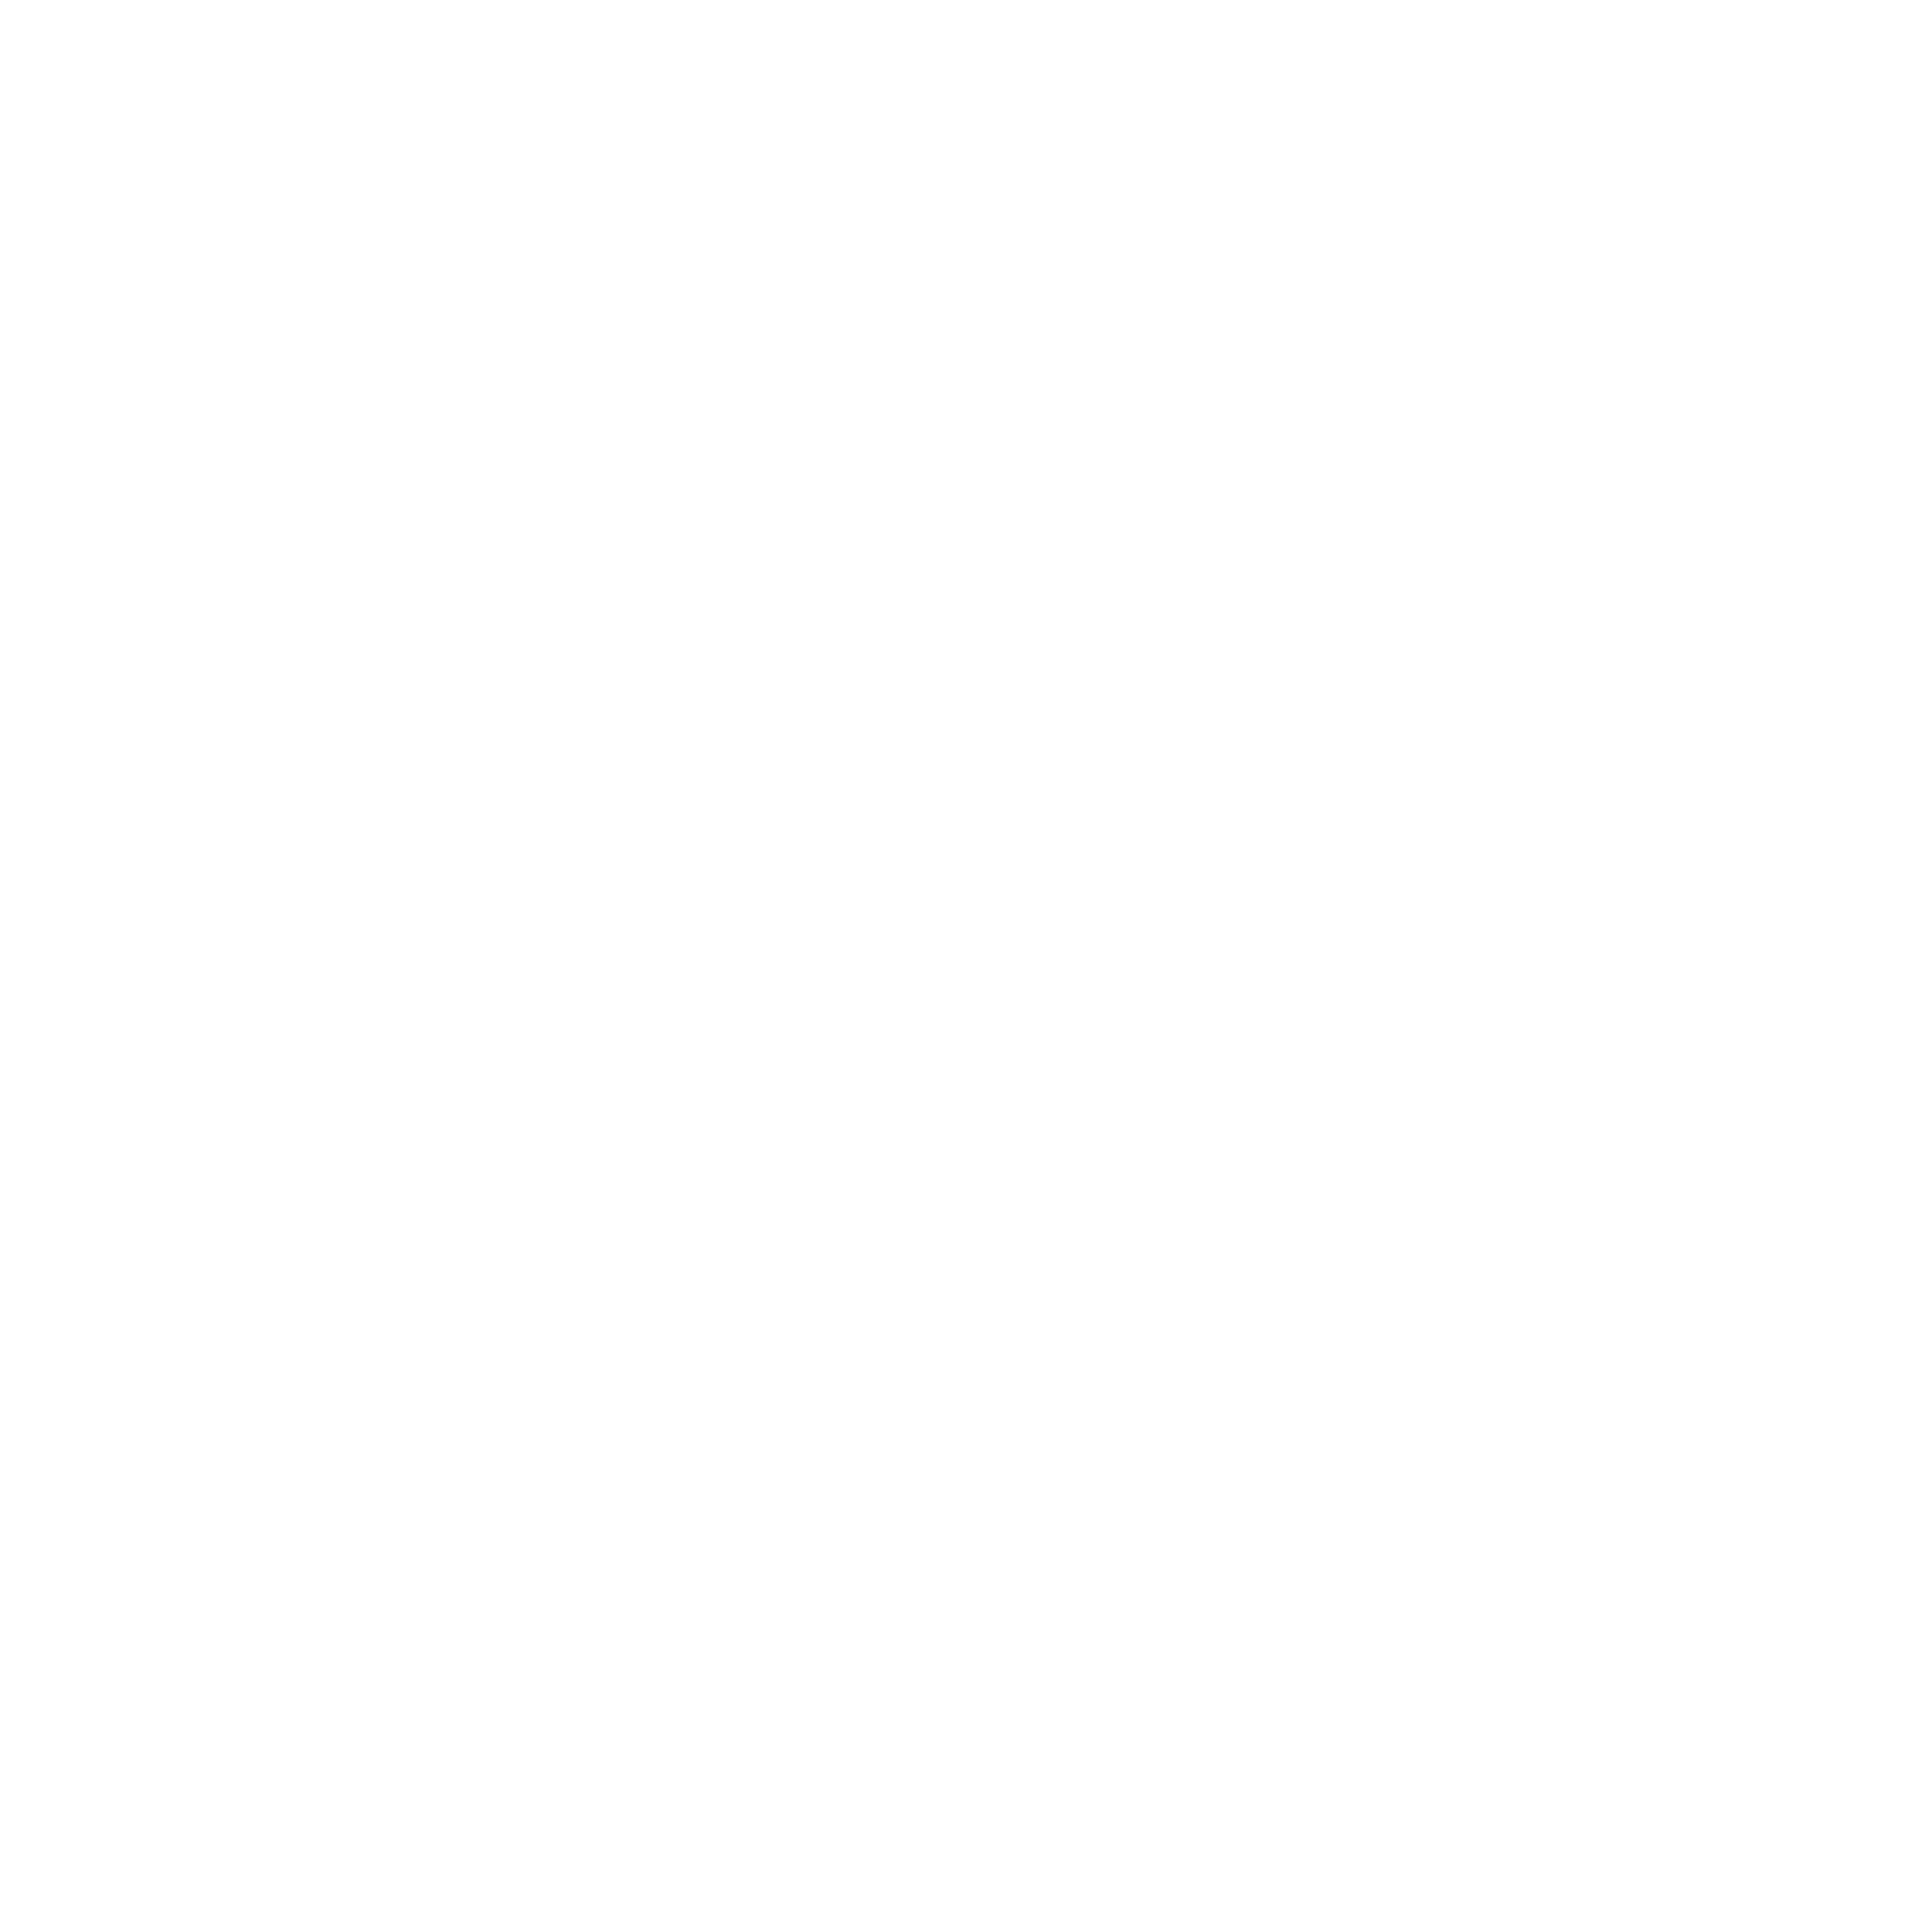 stuffd logo.png